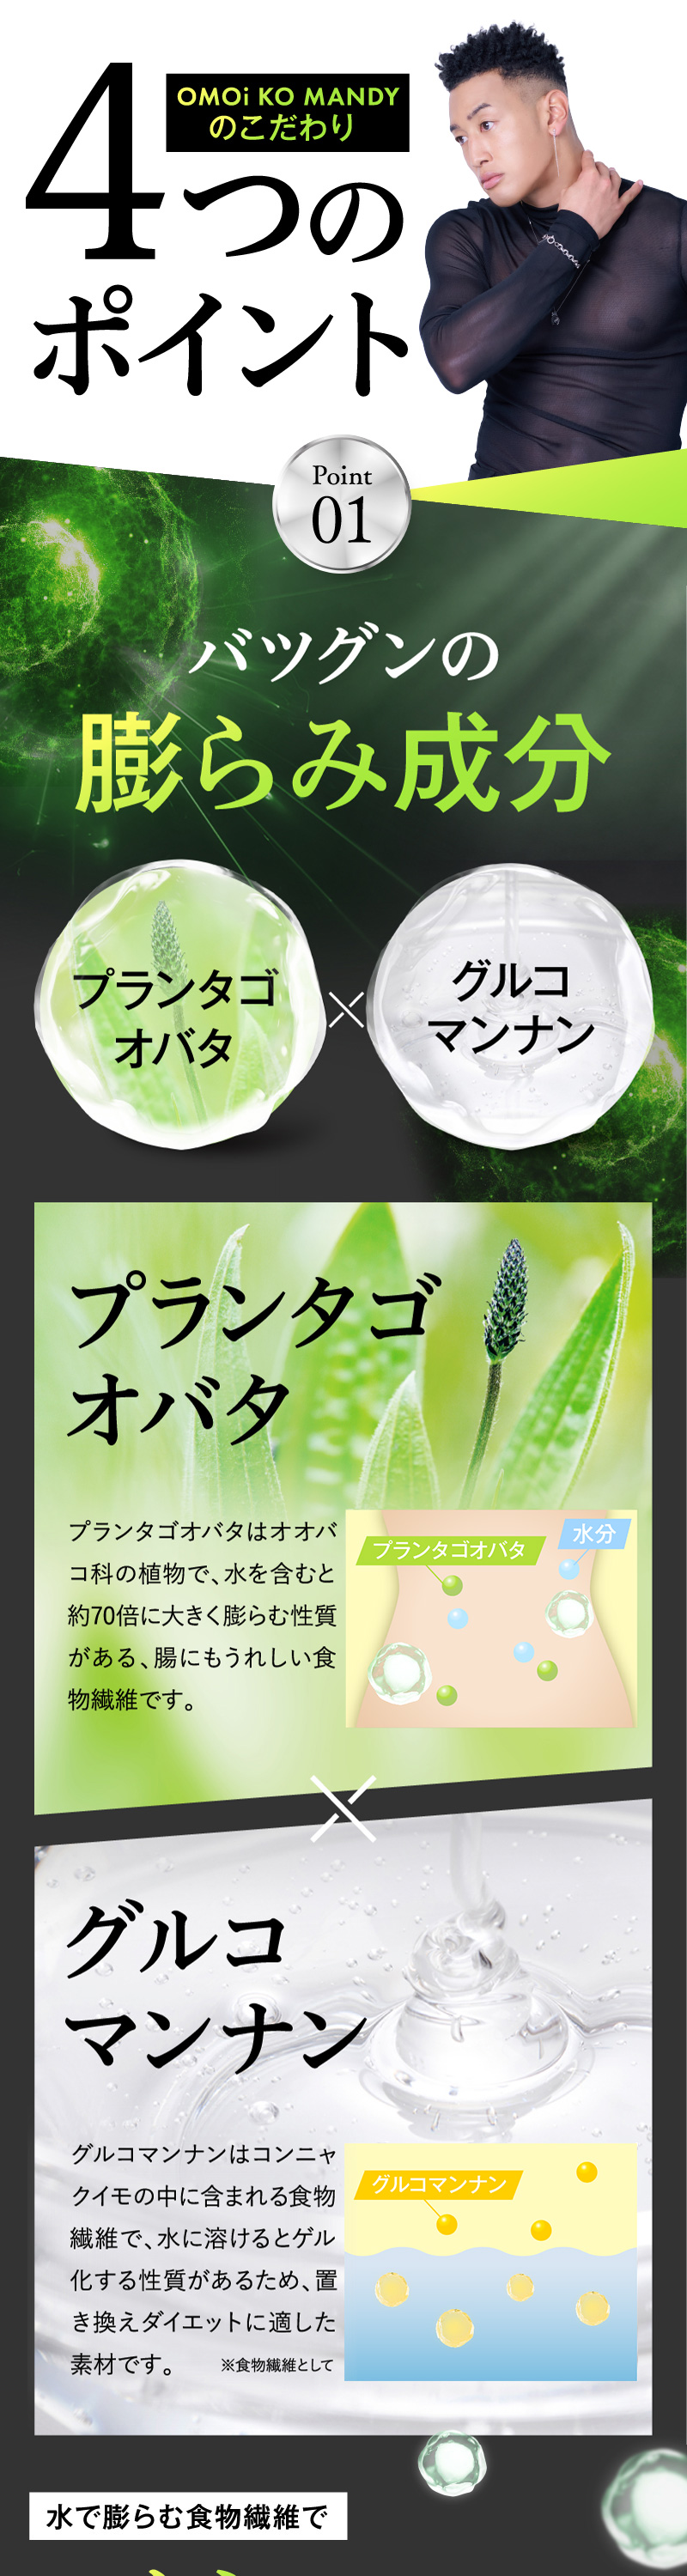 【公式】 オモイコメンディー OMOi KO MANDY 置き換えダイエット 15包 関口メンディー プロデュース 食品 サプリメント  ダイエットサプリ プロテイン ビタミン